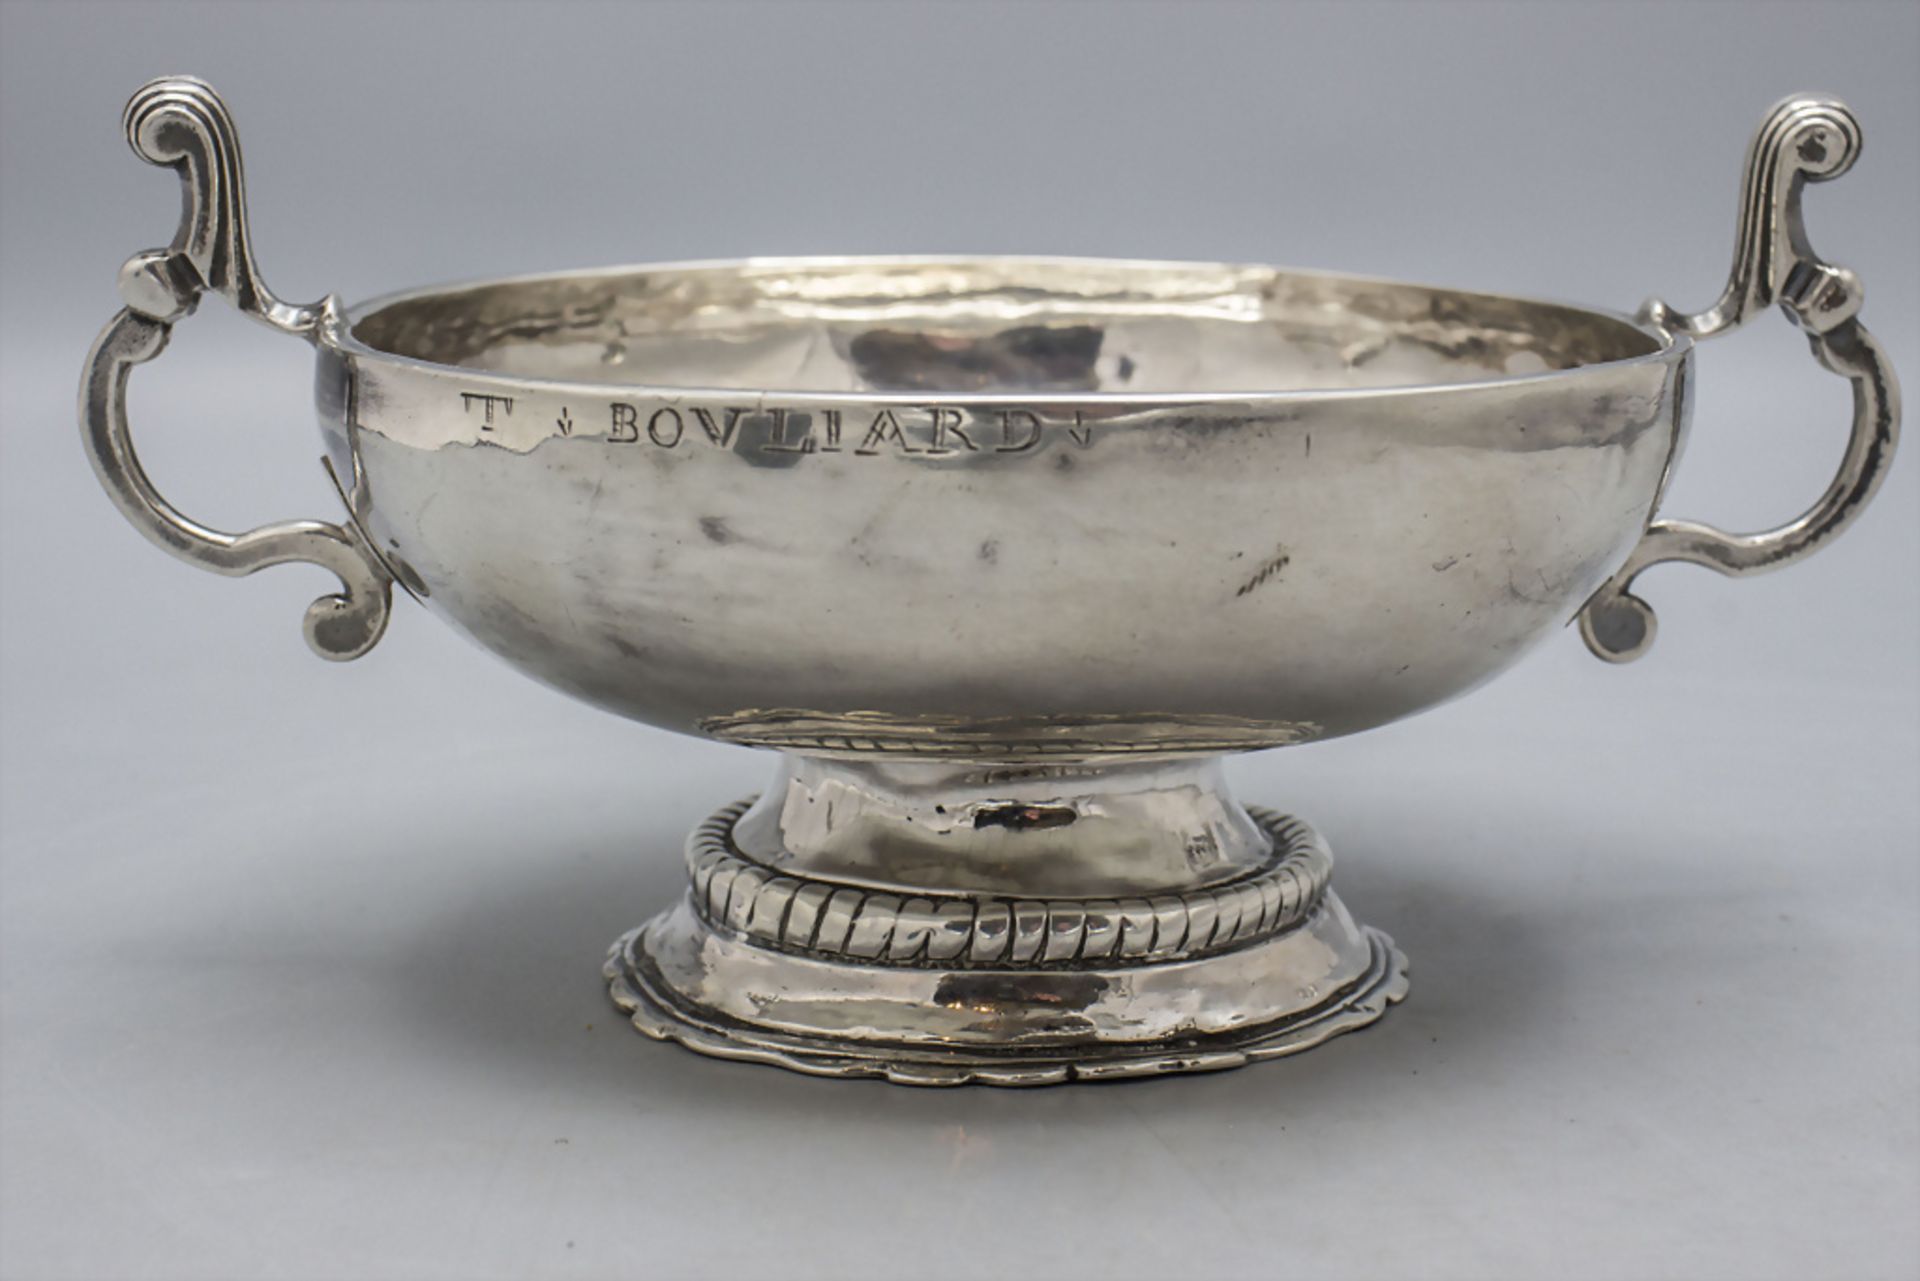 Hochzeitsschale / A silver wedding bowl / Coupe de mariage, J. Soldat, Mâcon, um 1760